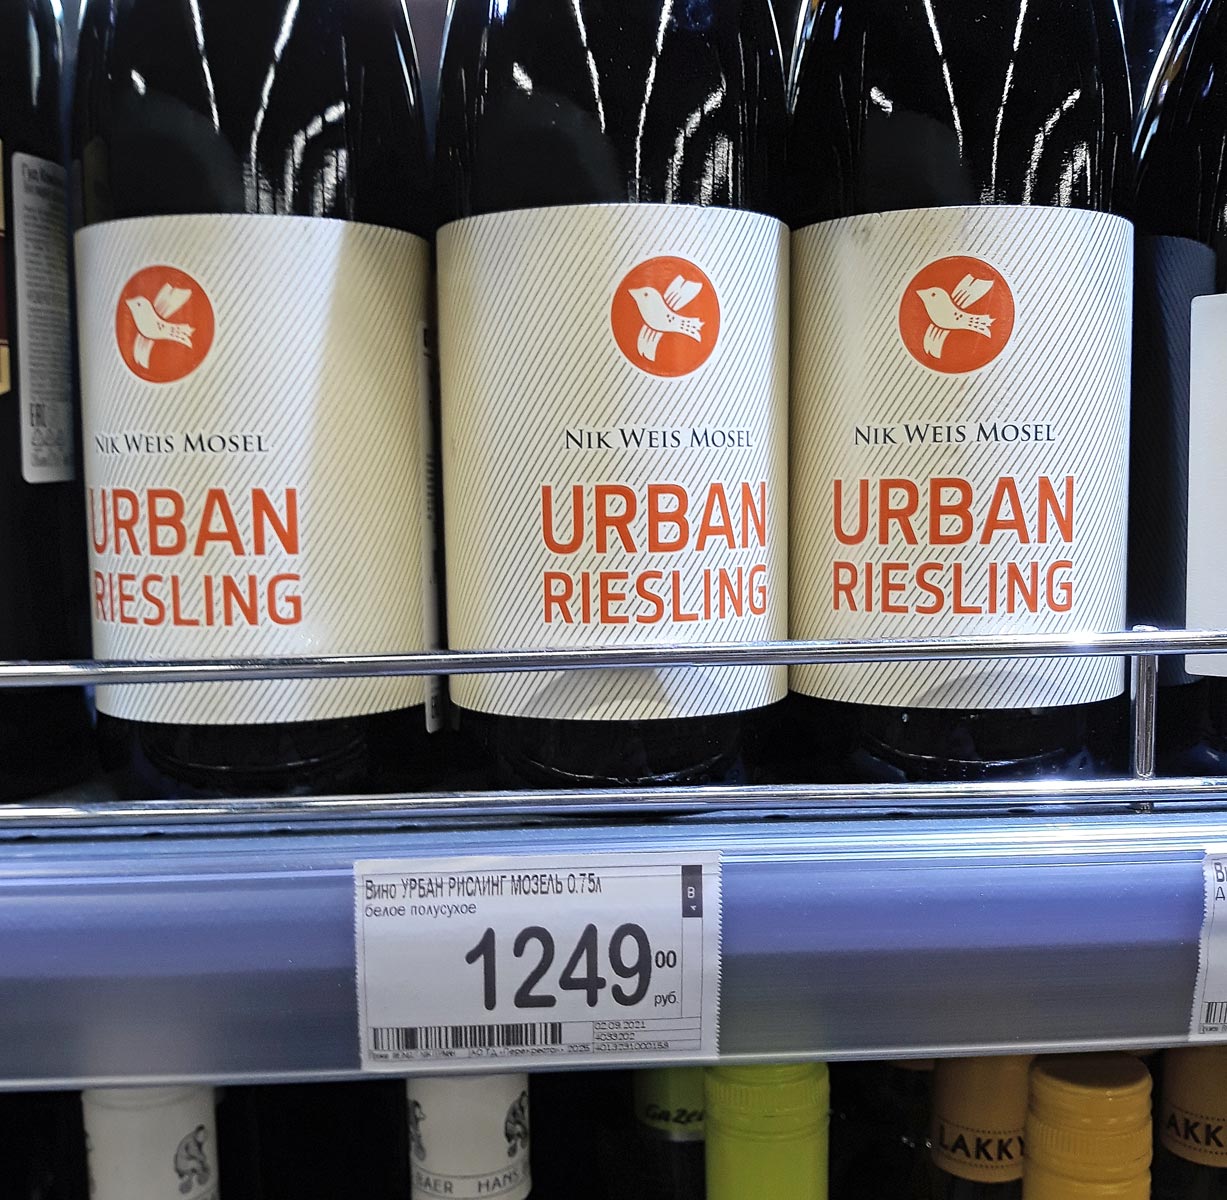 Nik weis. Urban Riesling вино. Урбан Рислинг. Рислинг Urban. Рислинг вино перекресток.